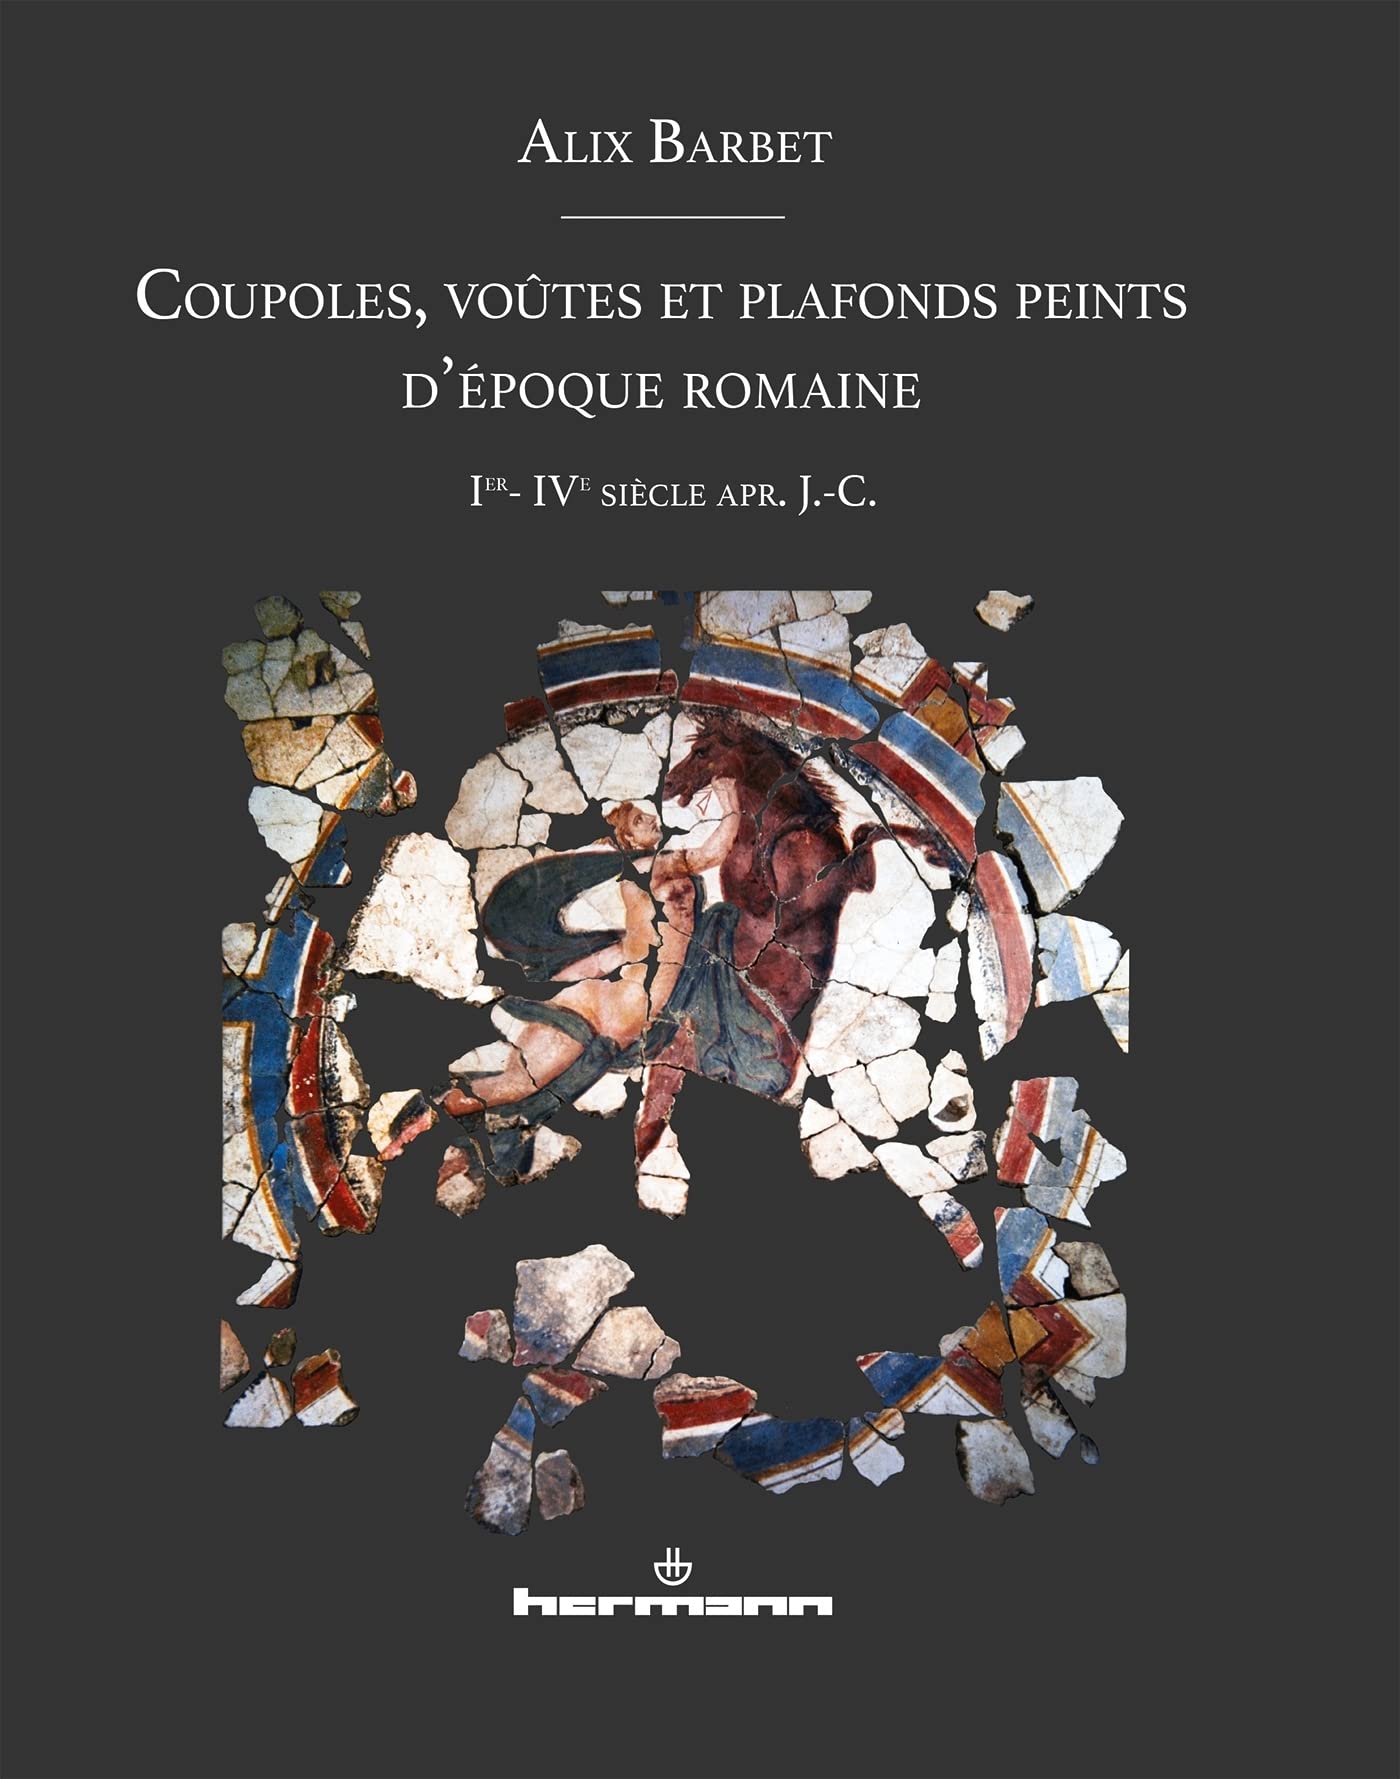 Coupoles, voûtes et plafonds peints d'époque romaine: Ier-IVe siècle apr. J.-C., 2021, 350 p.